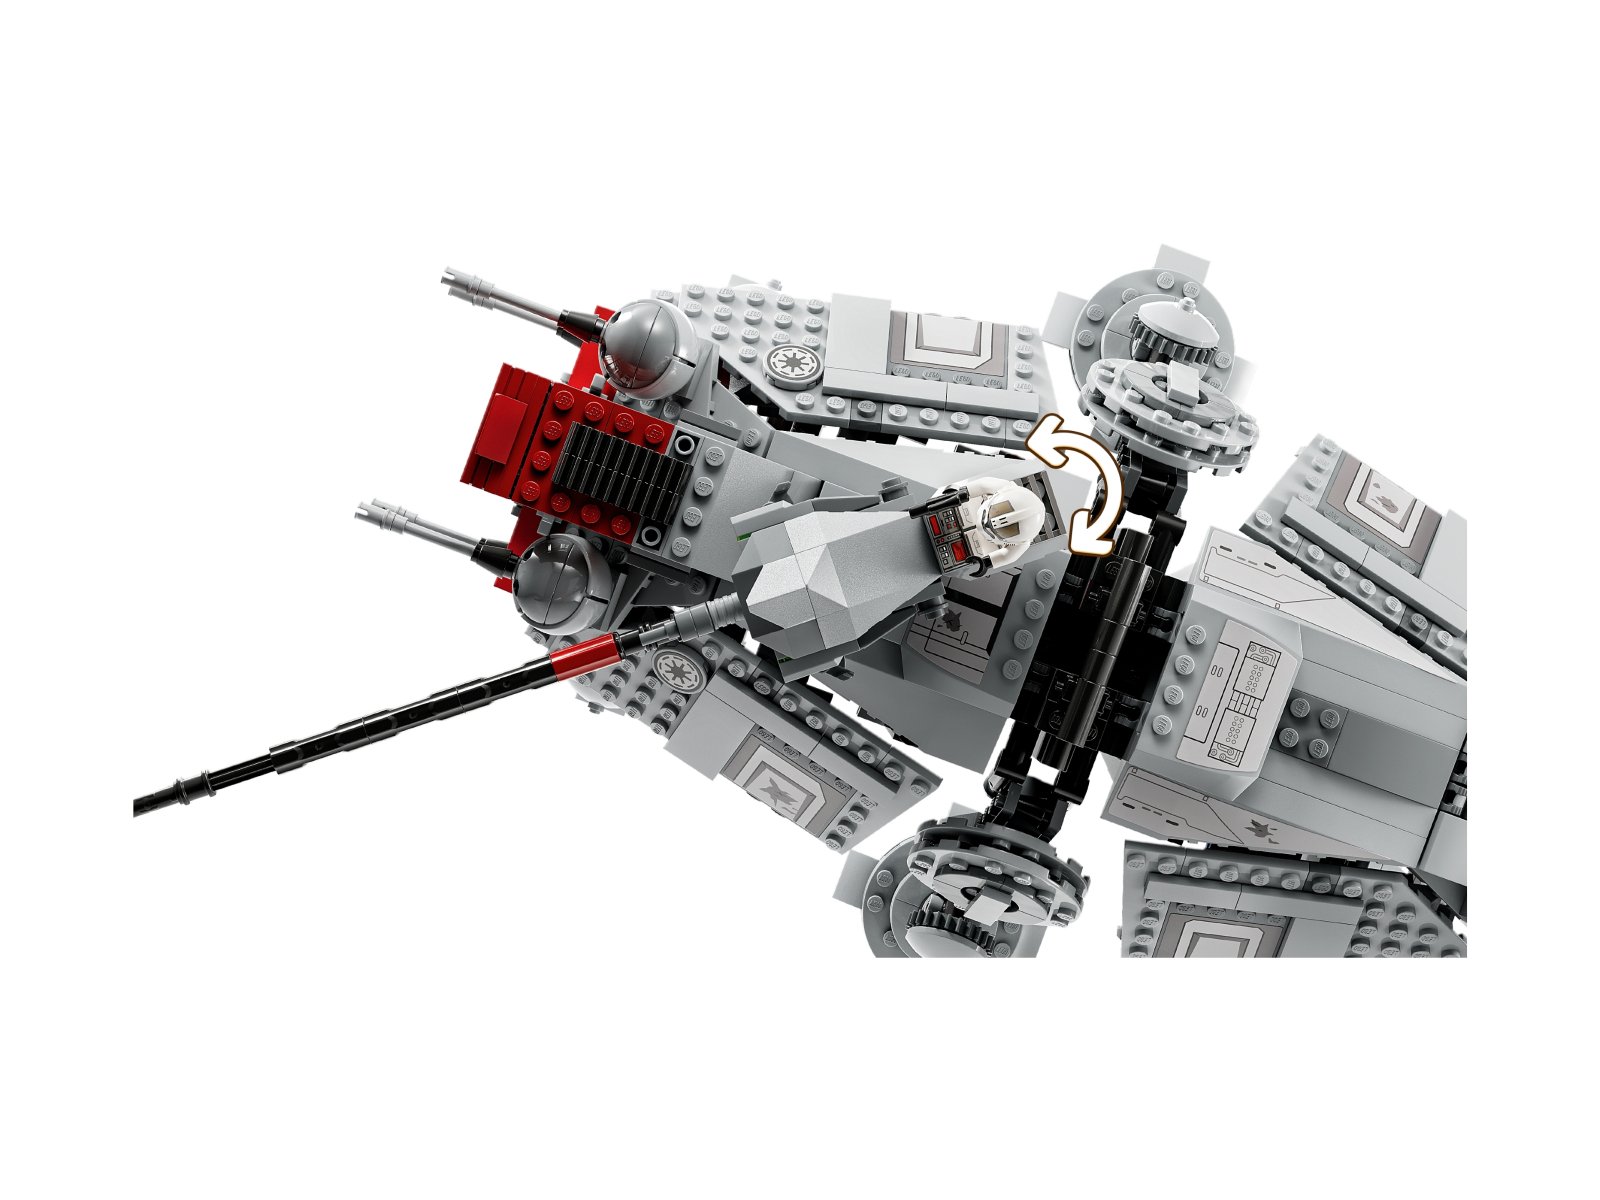 LEGO 75337 Star Wars Maszyna krocząca AT-TE™